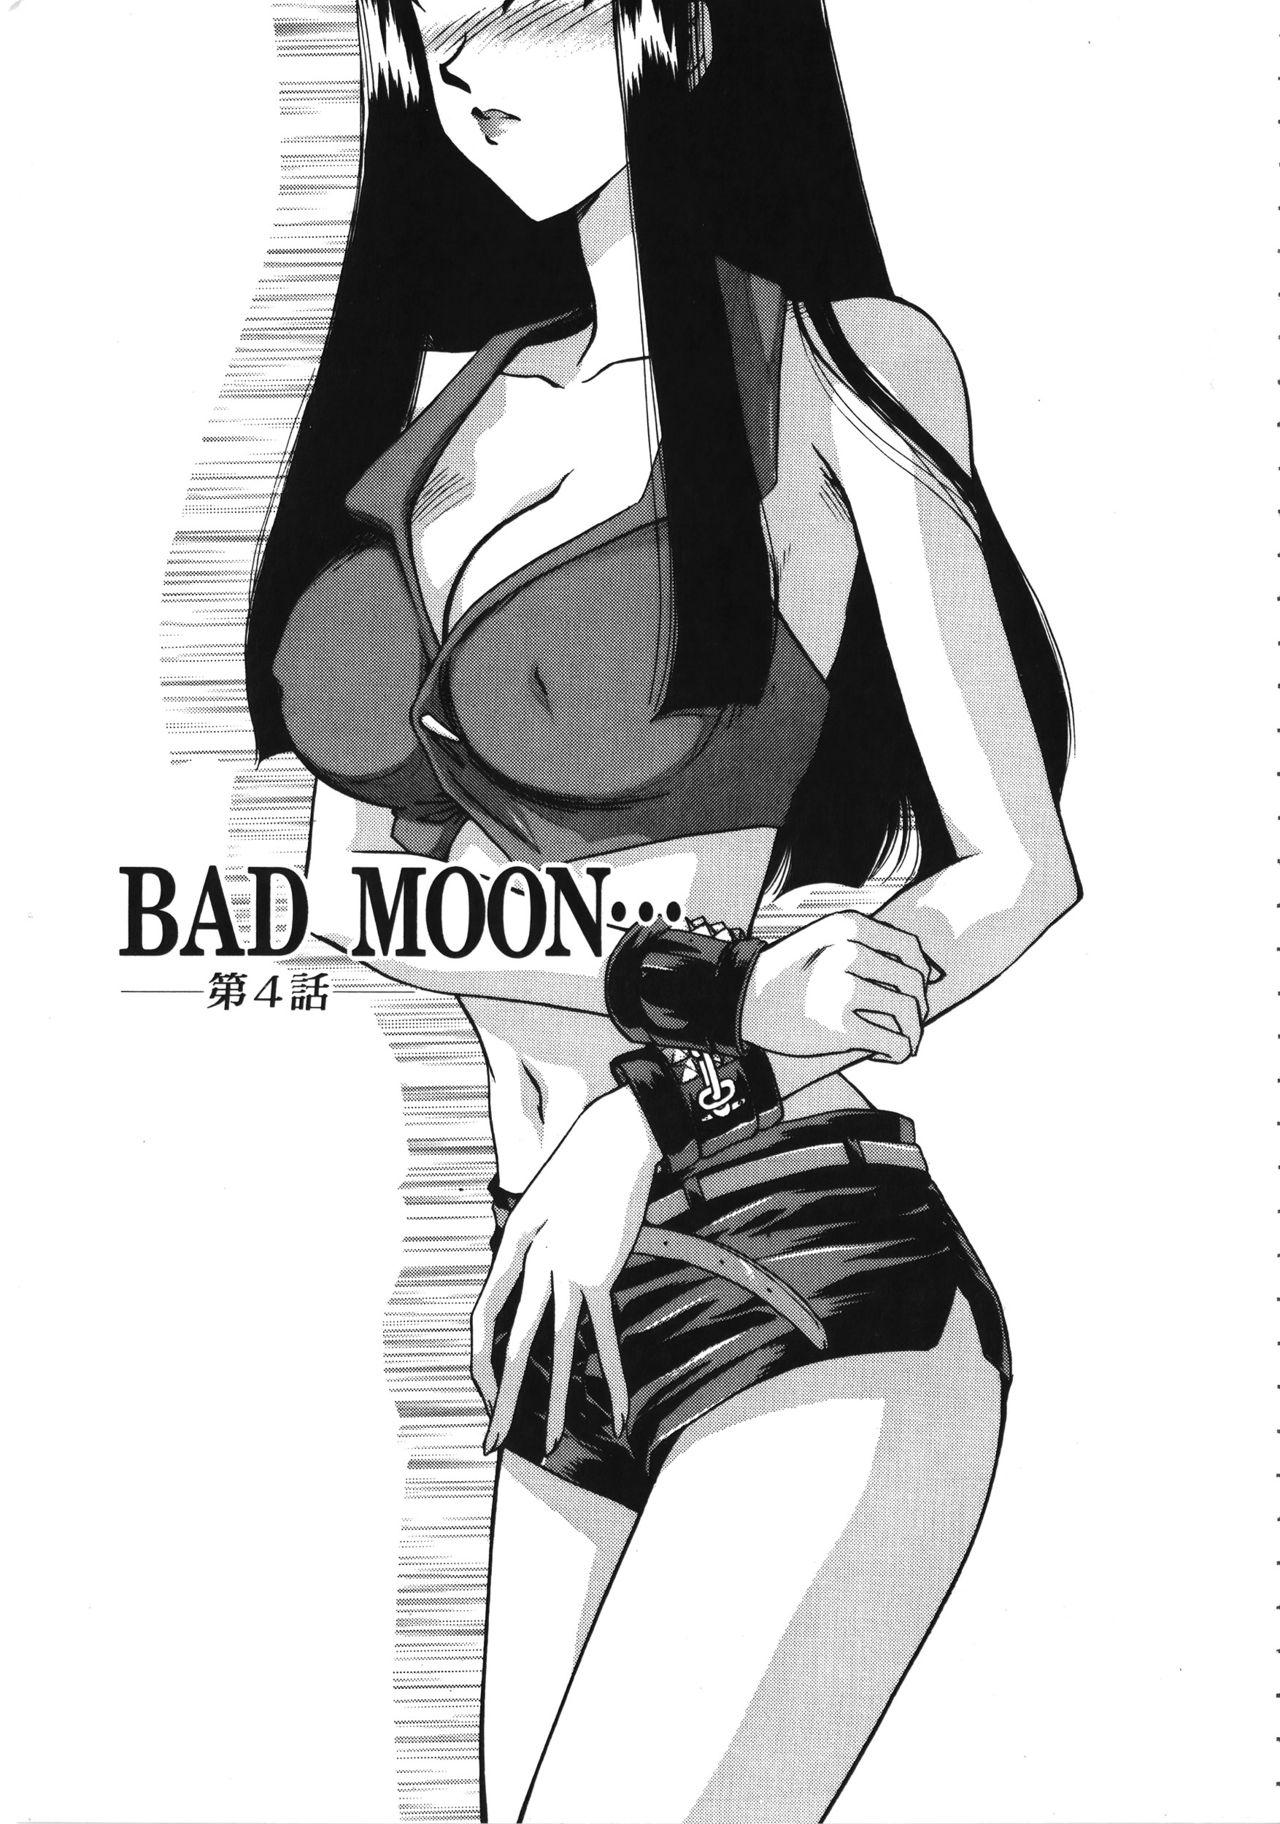 Bad Moon... 72